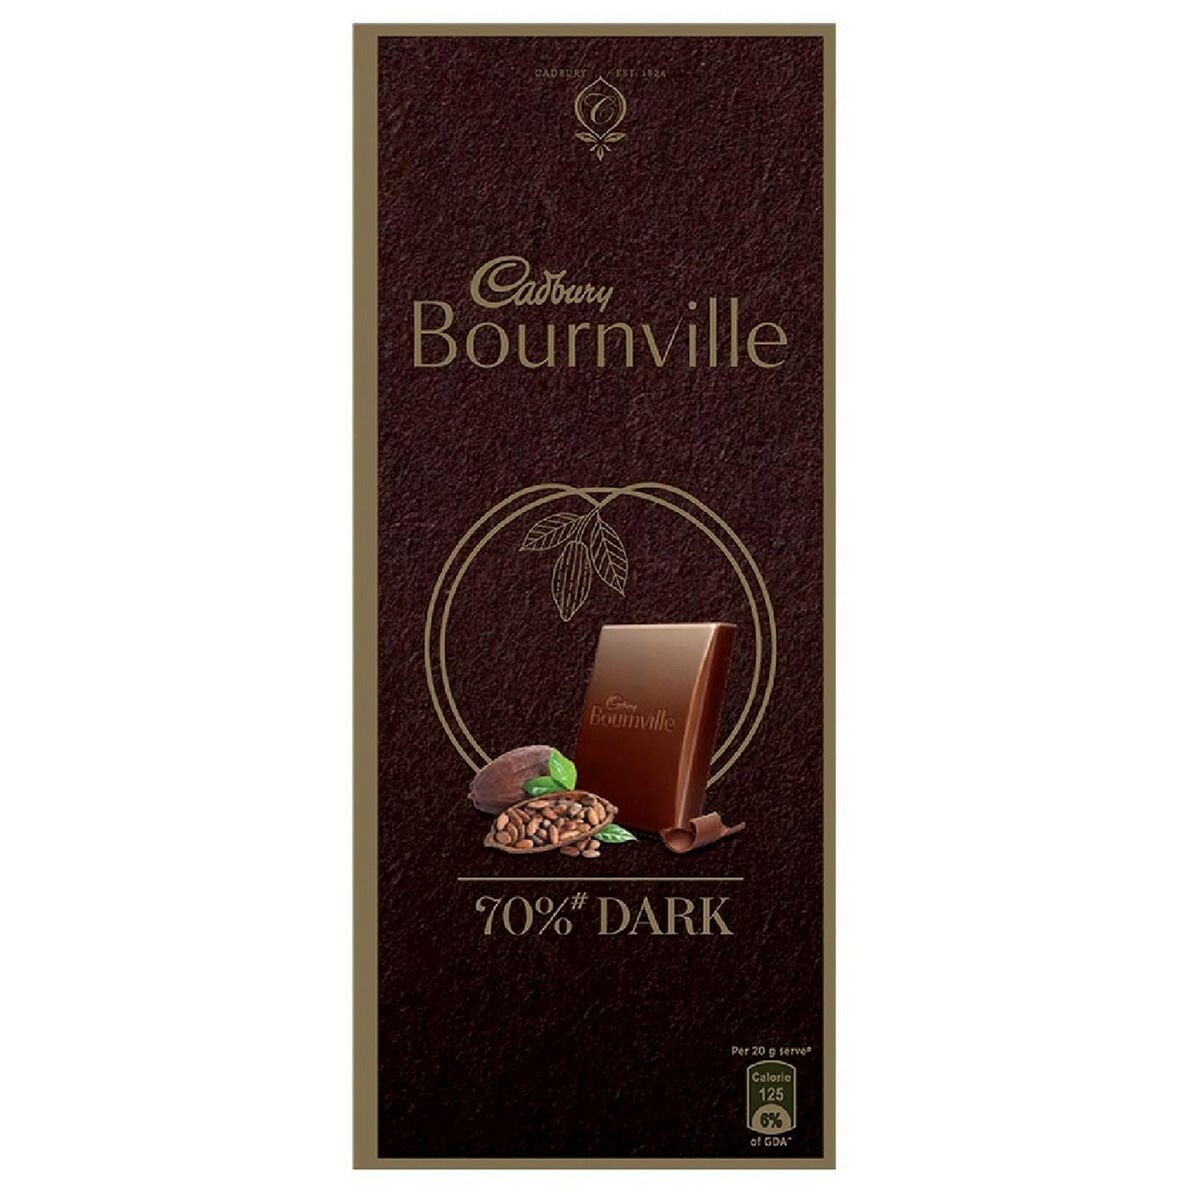 Cadbury Bournville 70% Dark 80gm